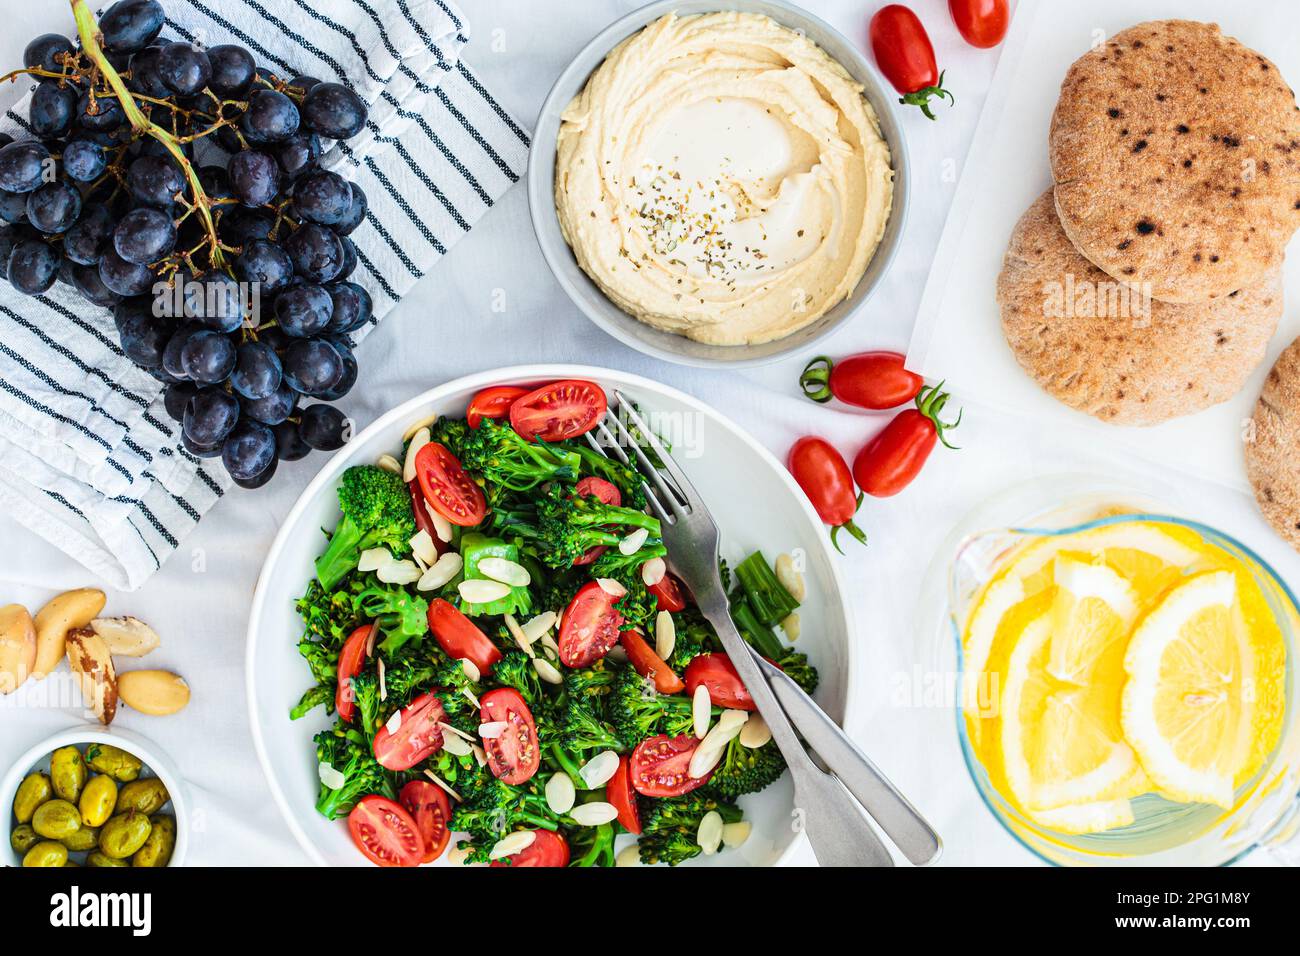 Cibo da picnic vegano: Hummus, limonata, insalata di broccoli e frutta su una coperta bianca sull'erba, vista dall'alto. Foto Stock